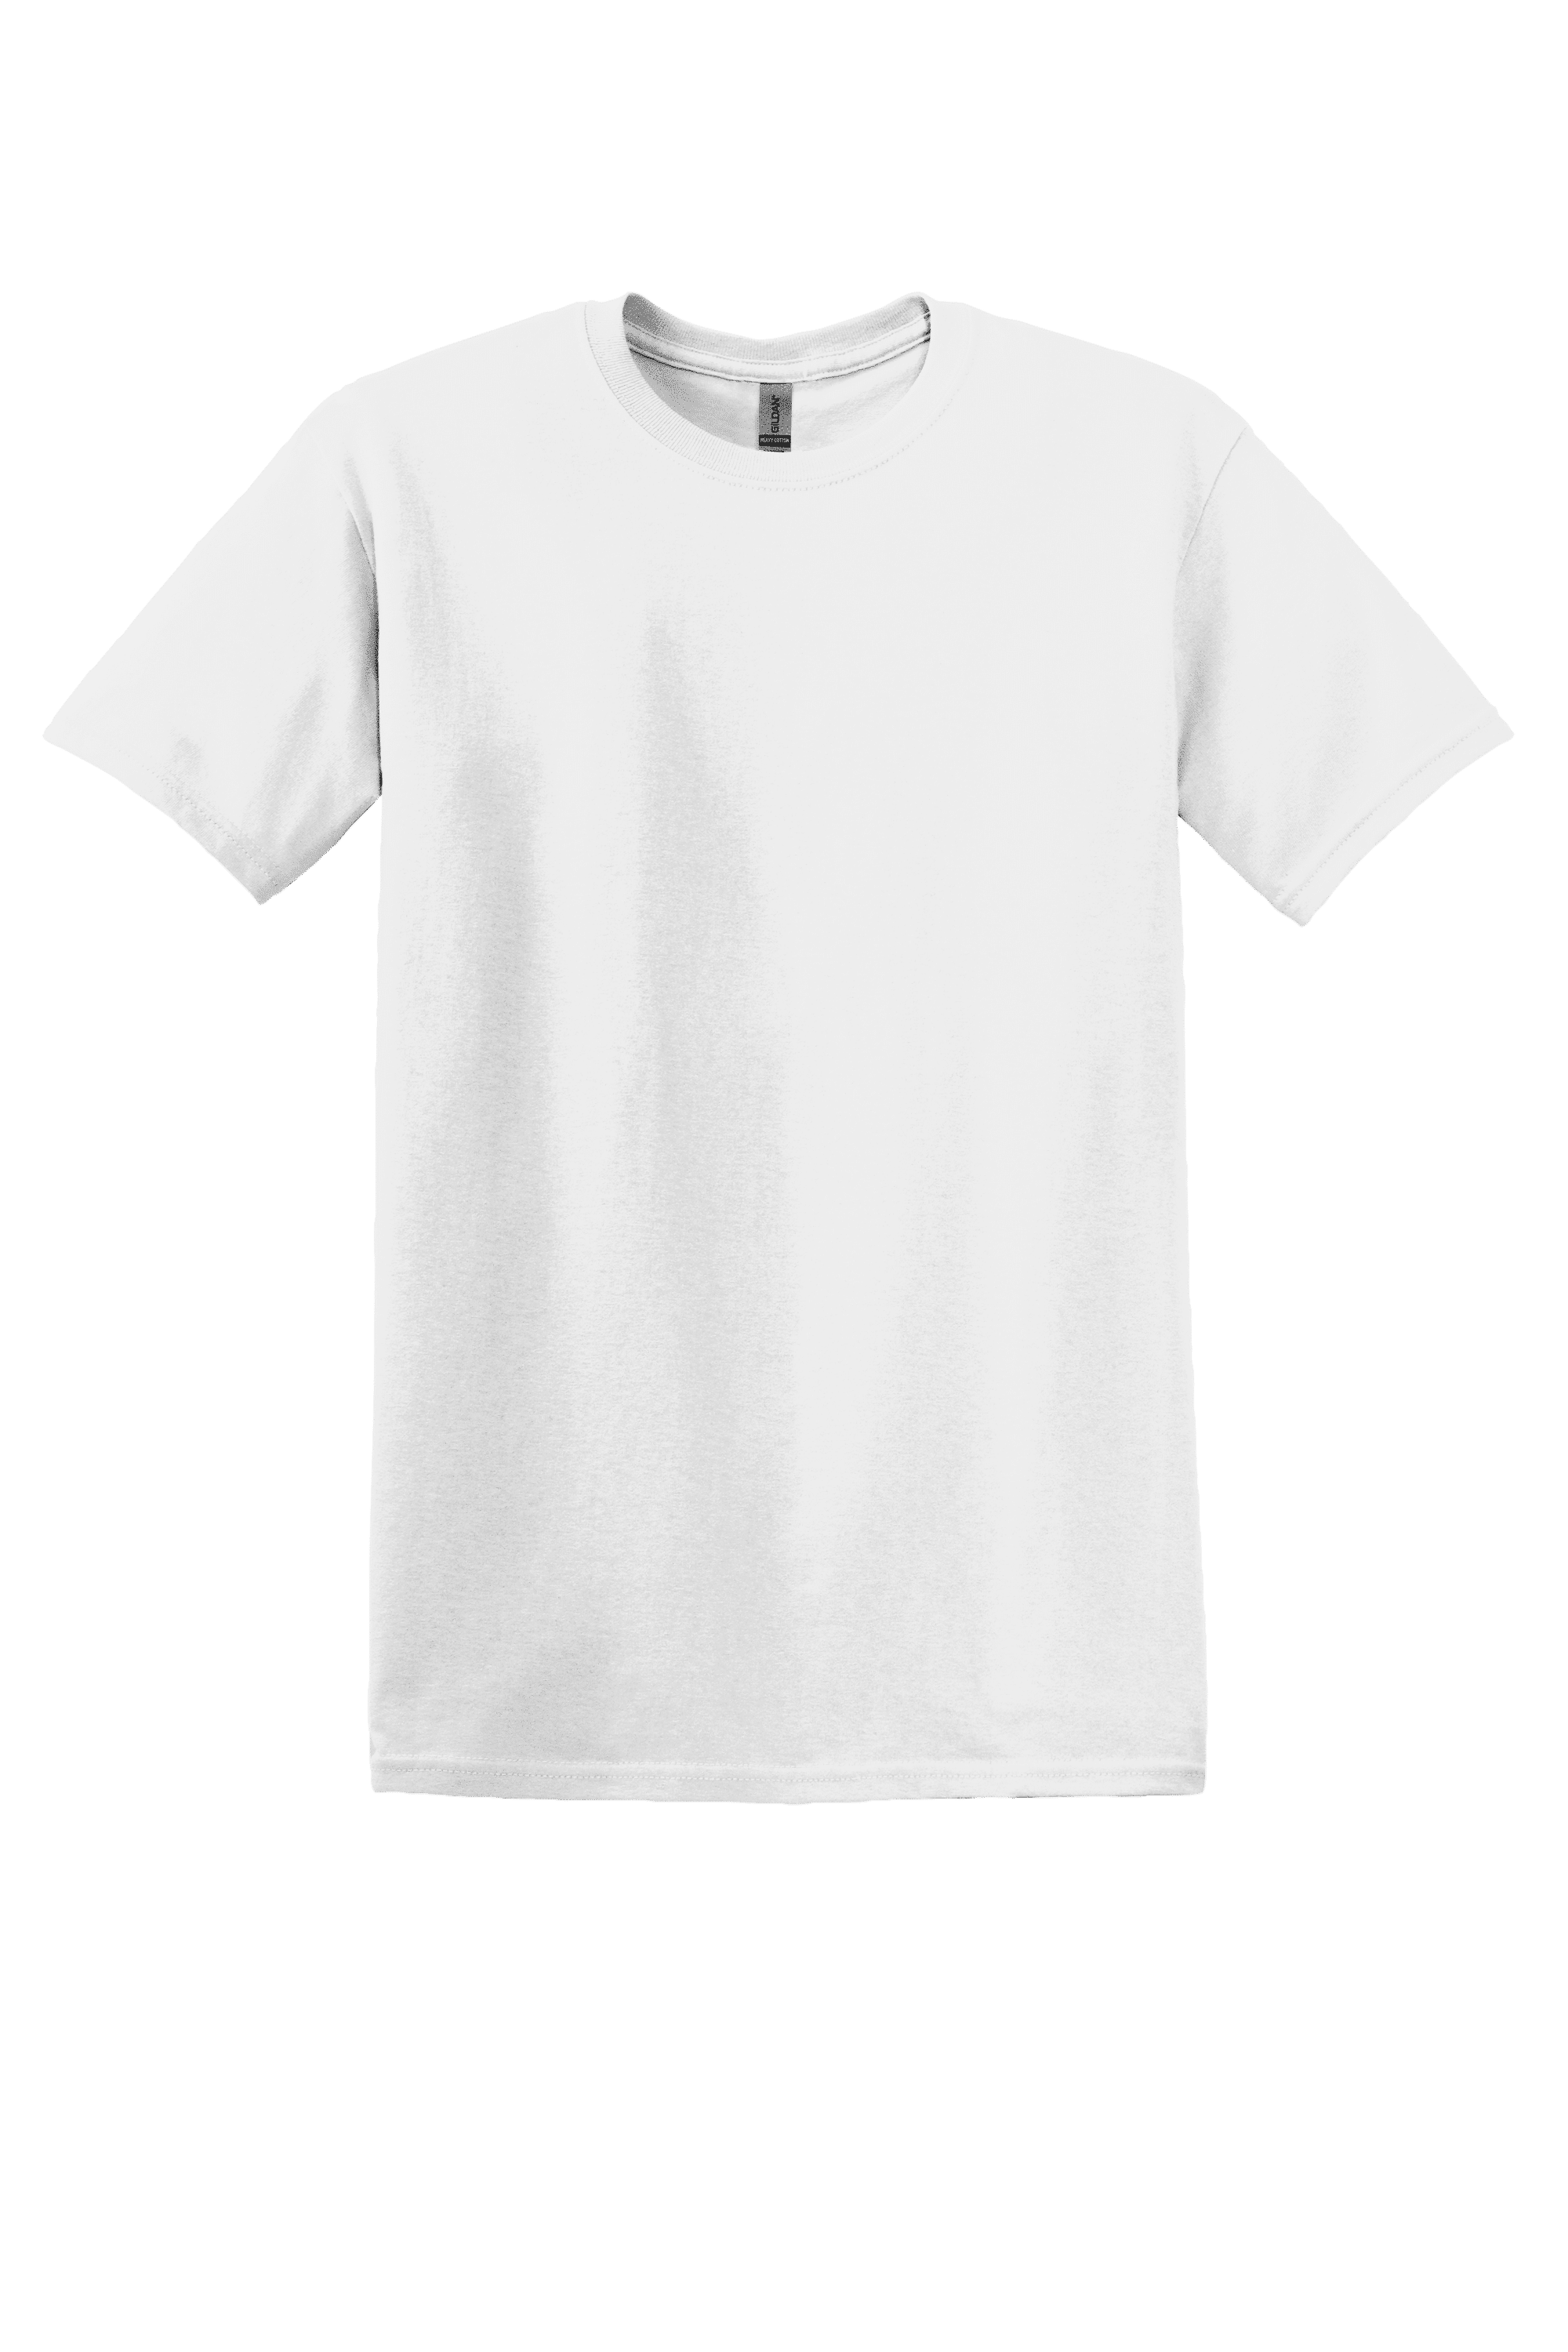 t shirt price